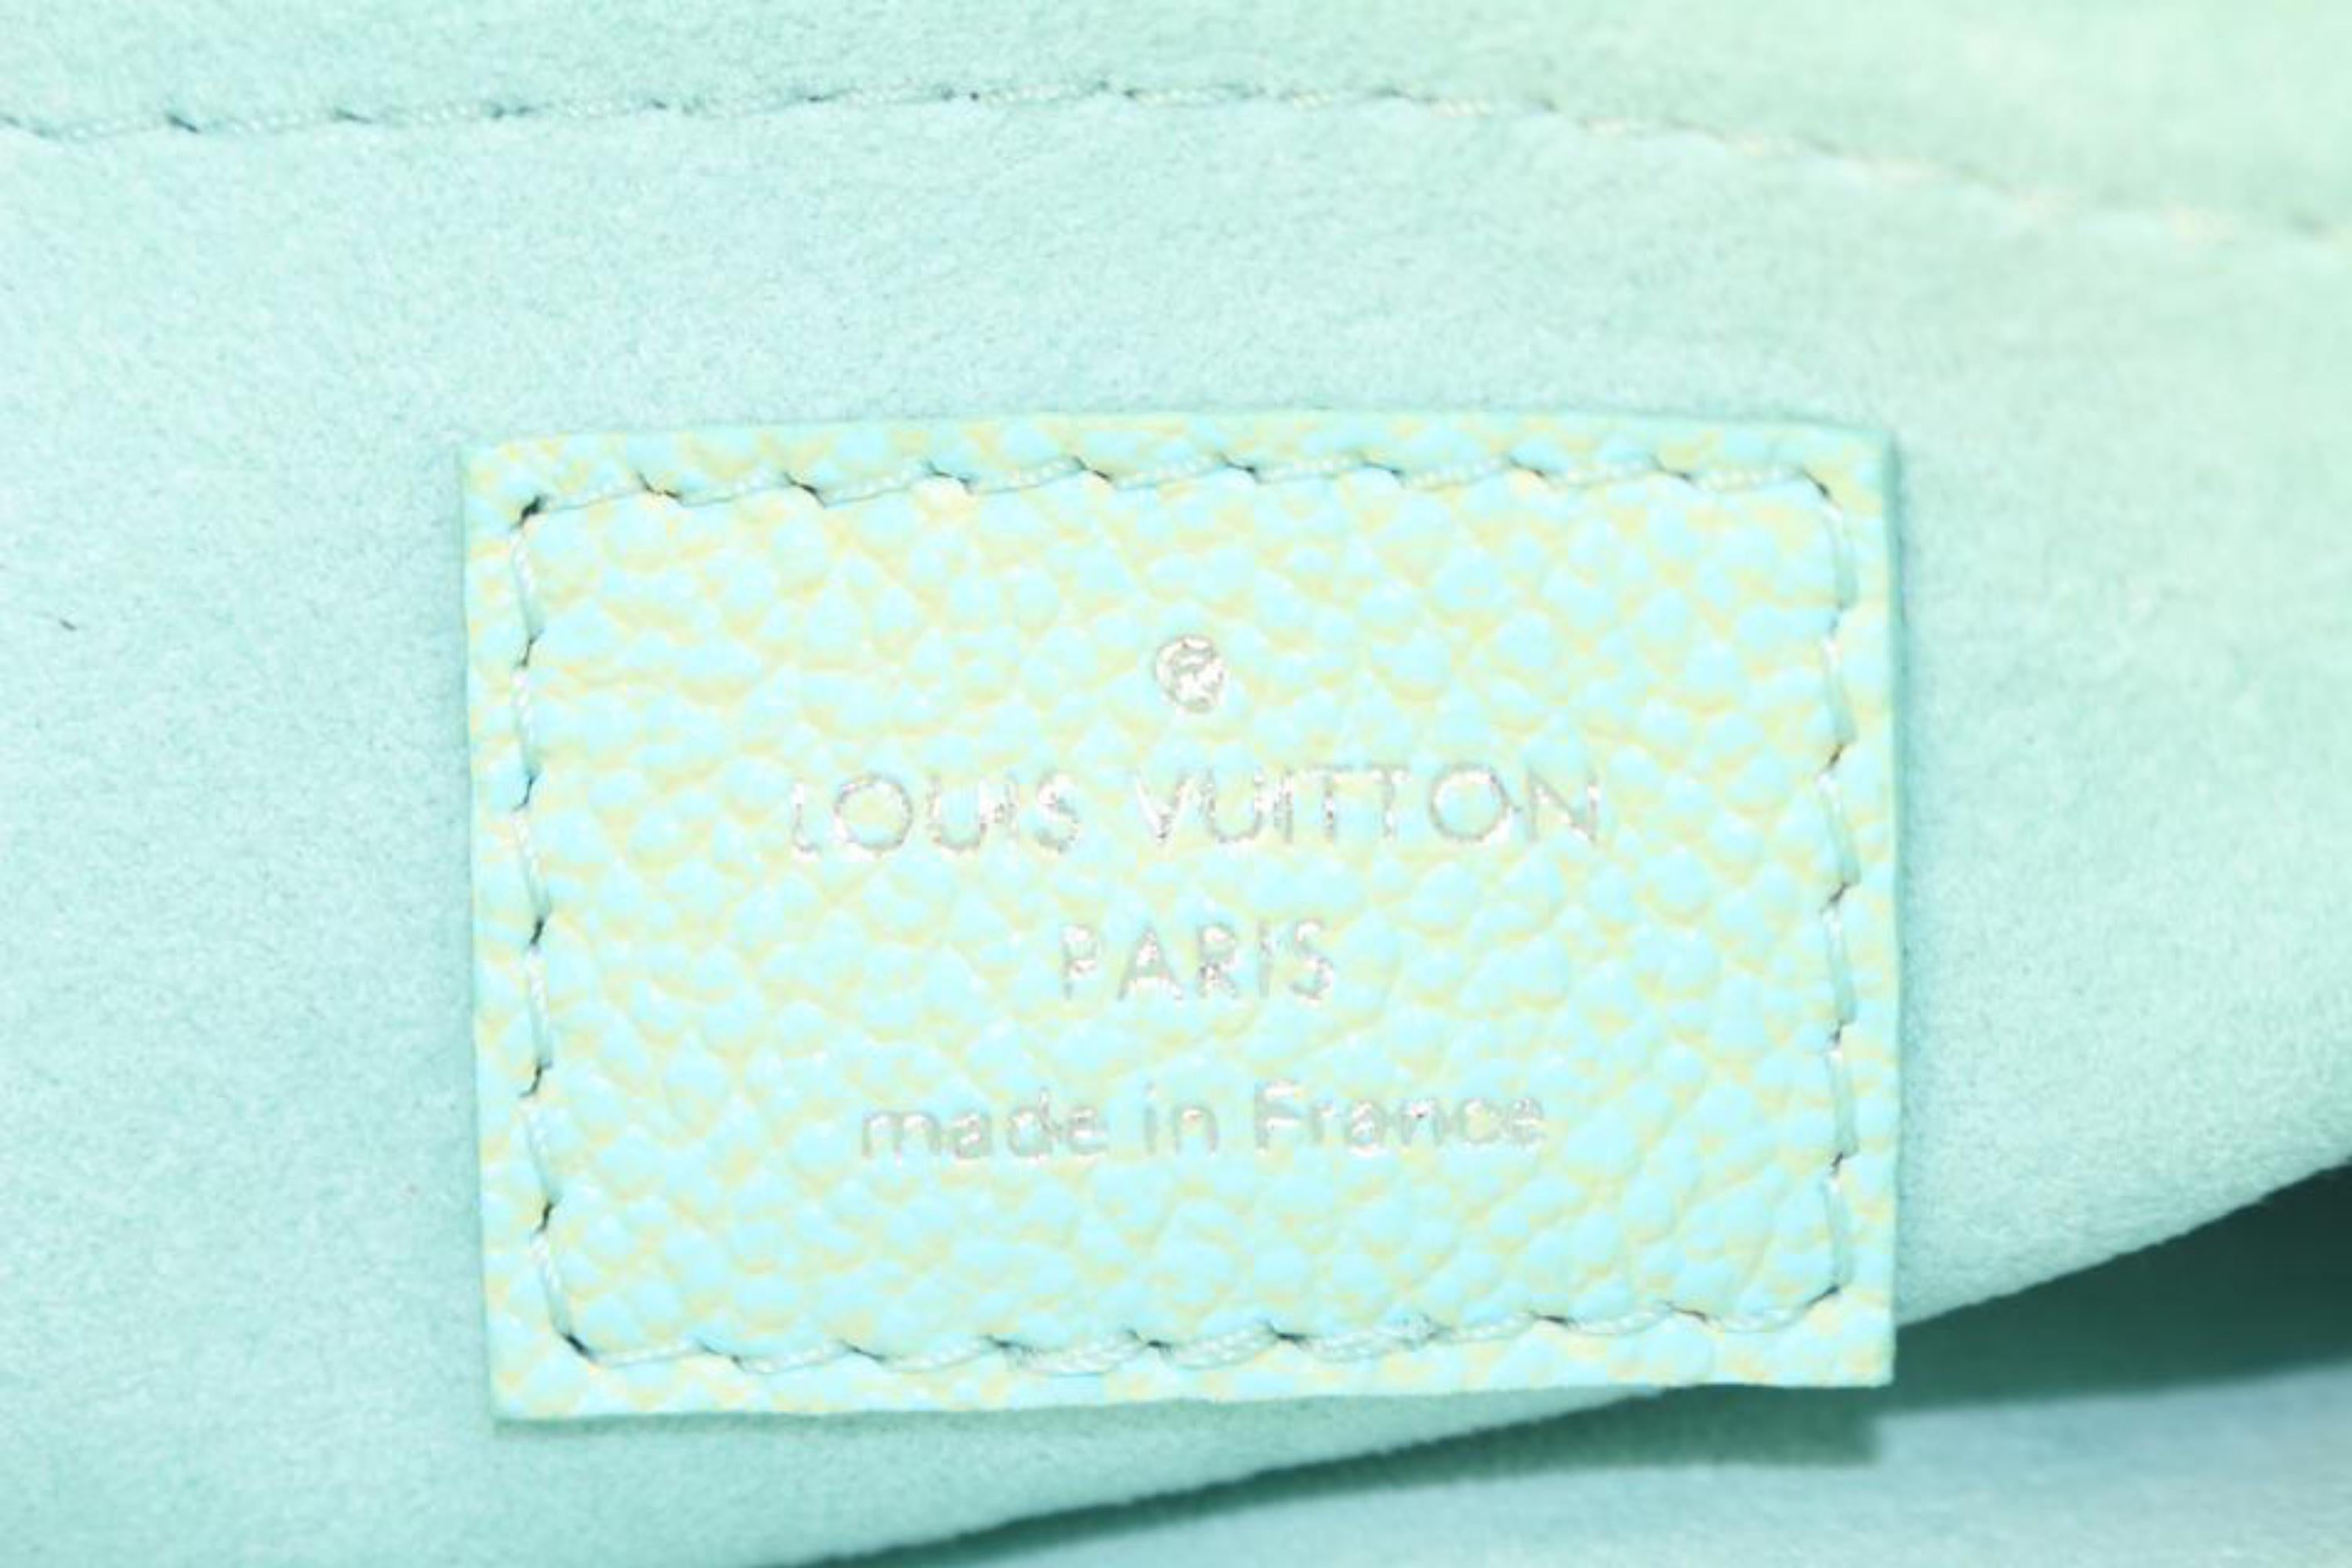 Louis Vuitton Monogram Empreinte Stardust Multi Pochette